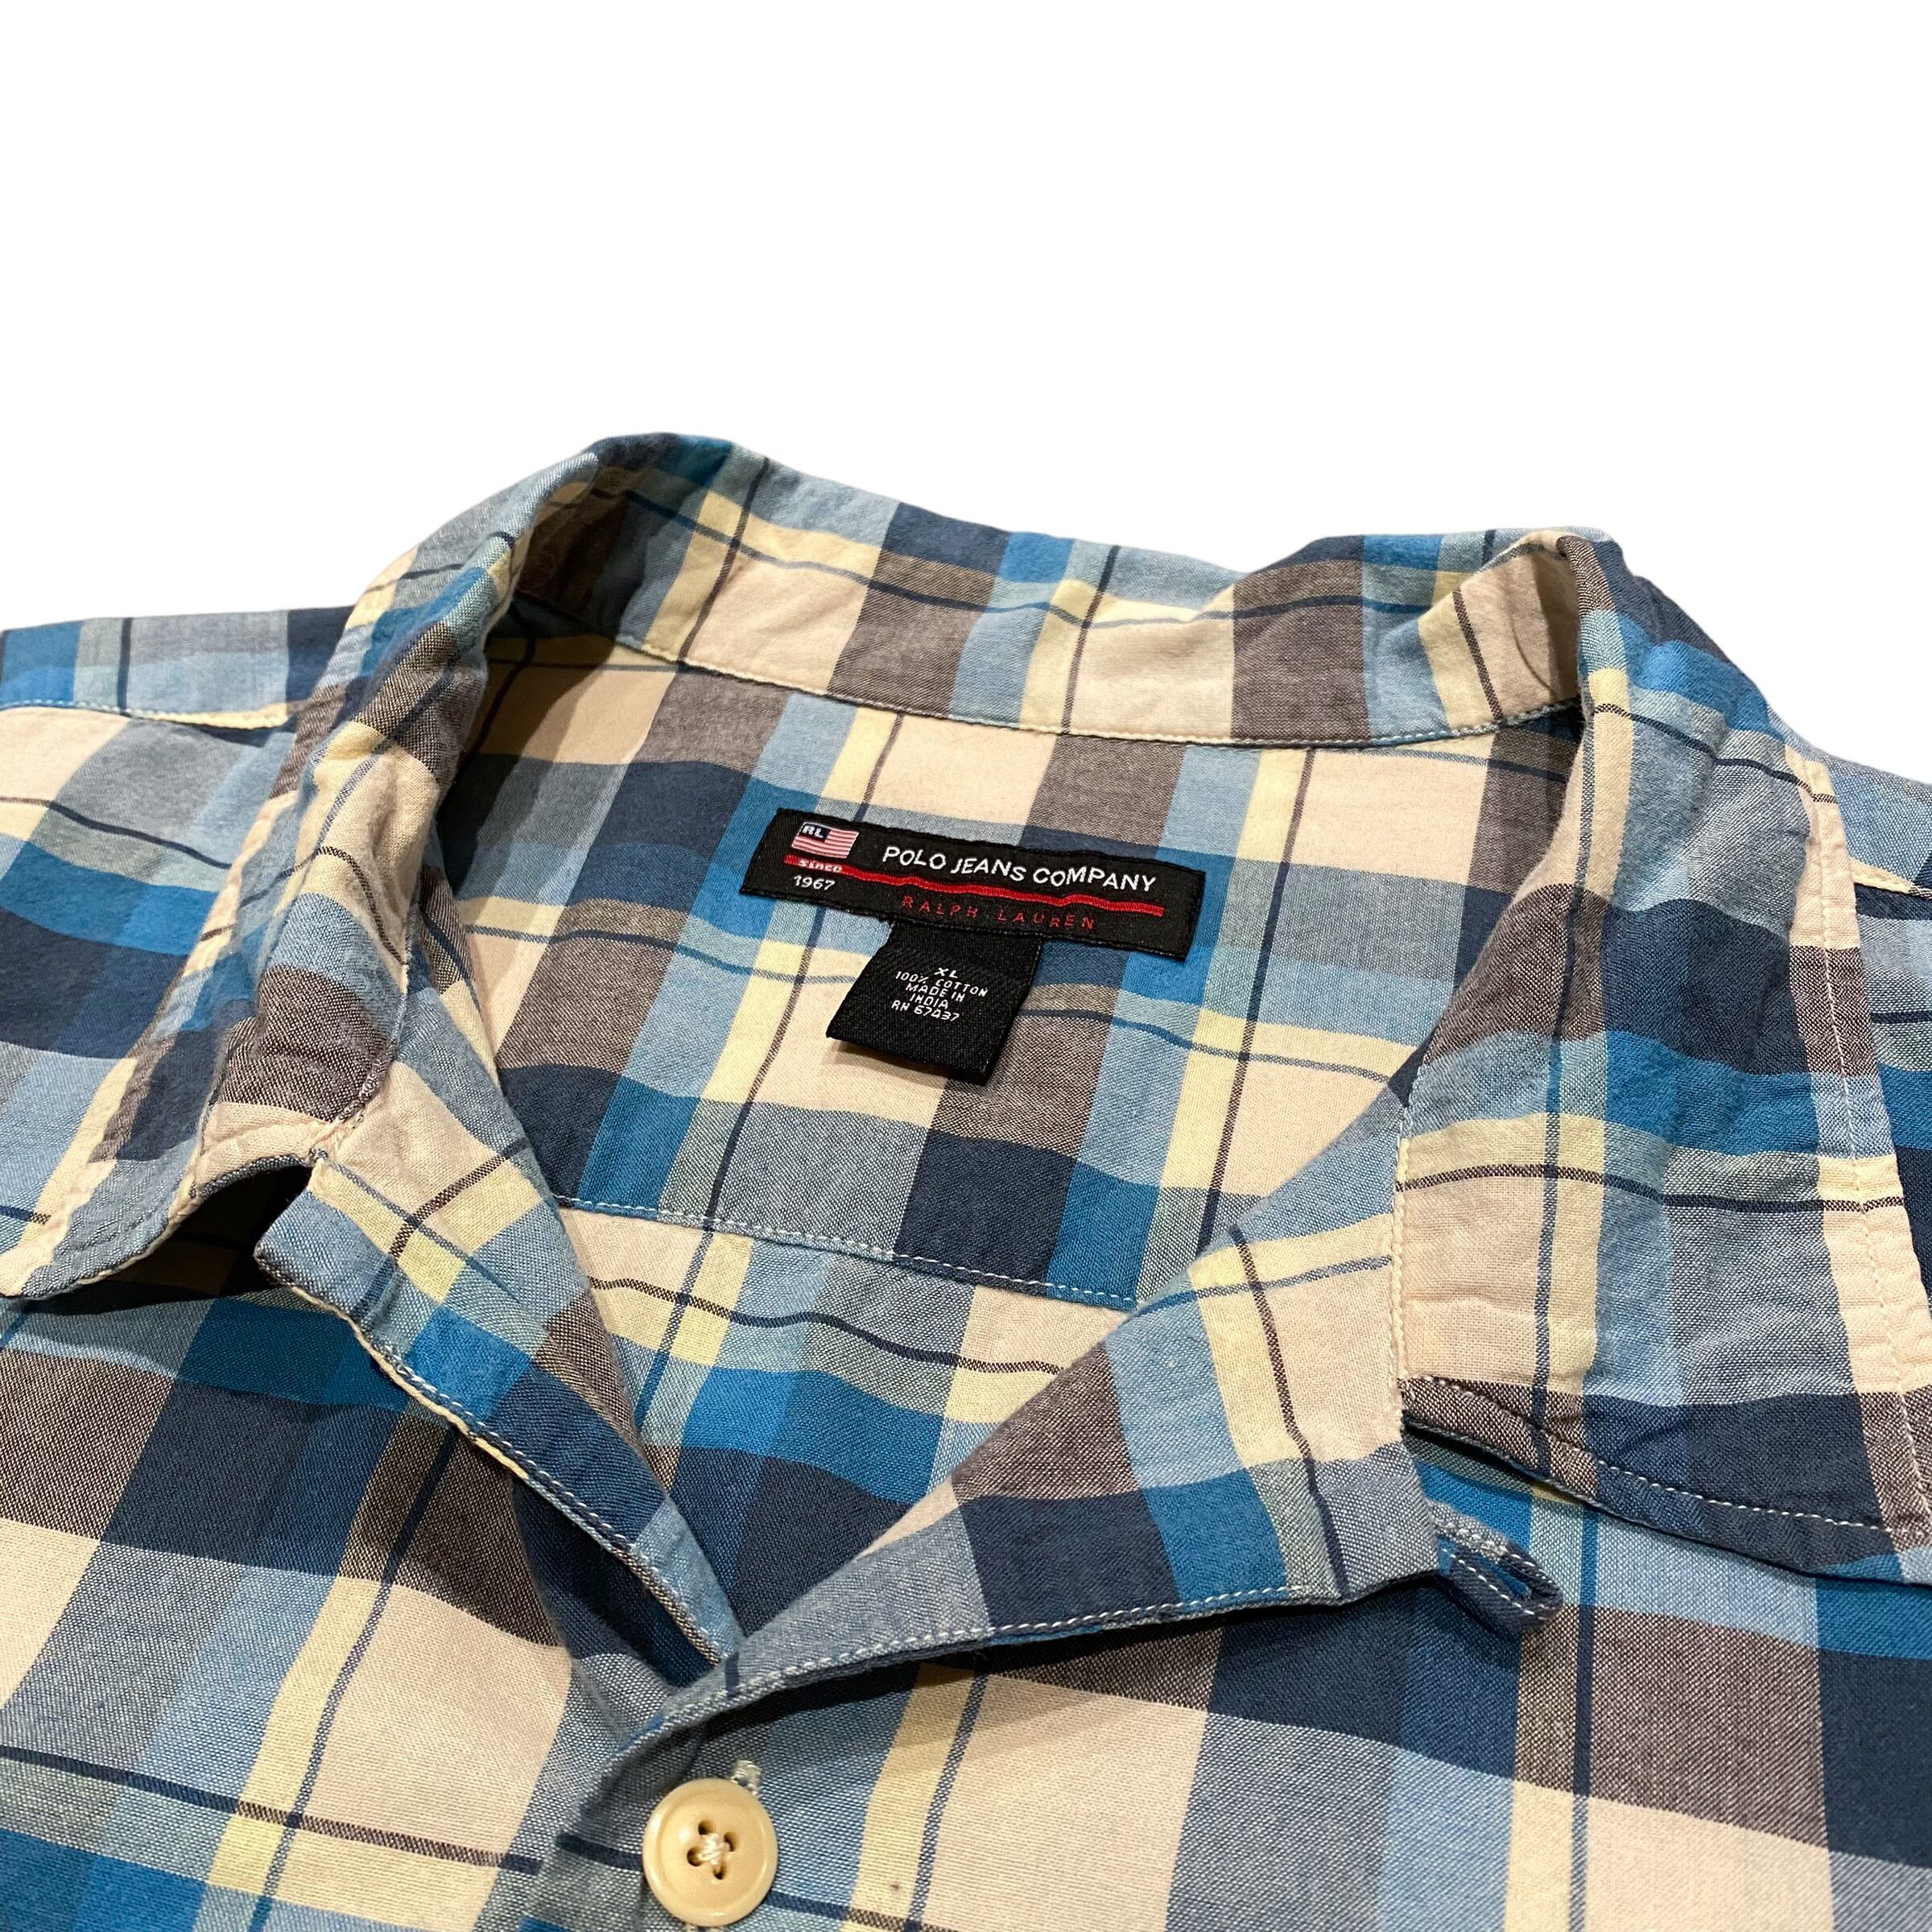 's Polo Jeans Ralph Lauren S/S Open Colar Shirt XL / ポロ